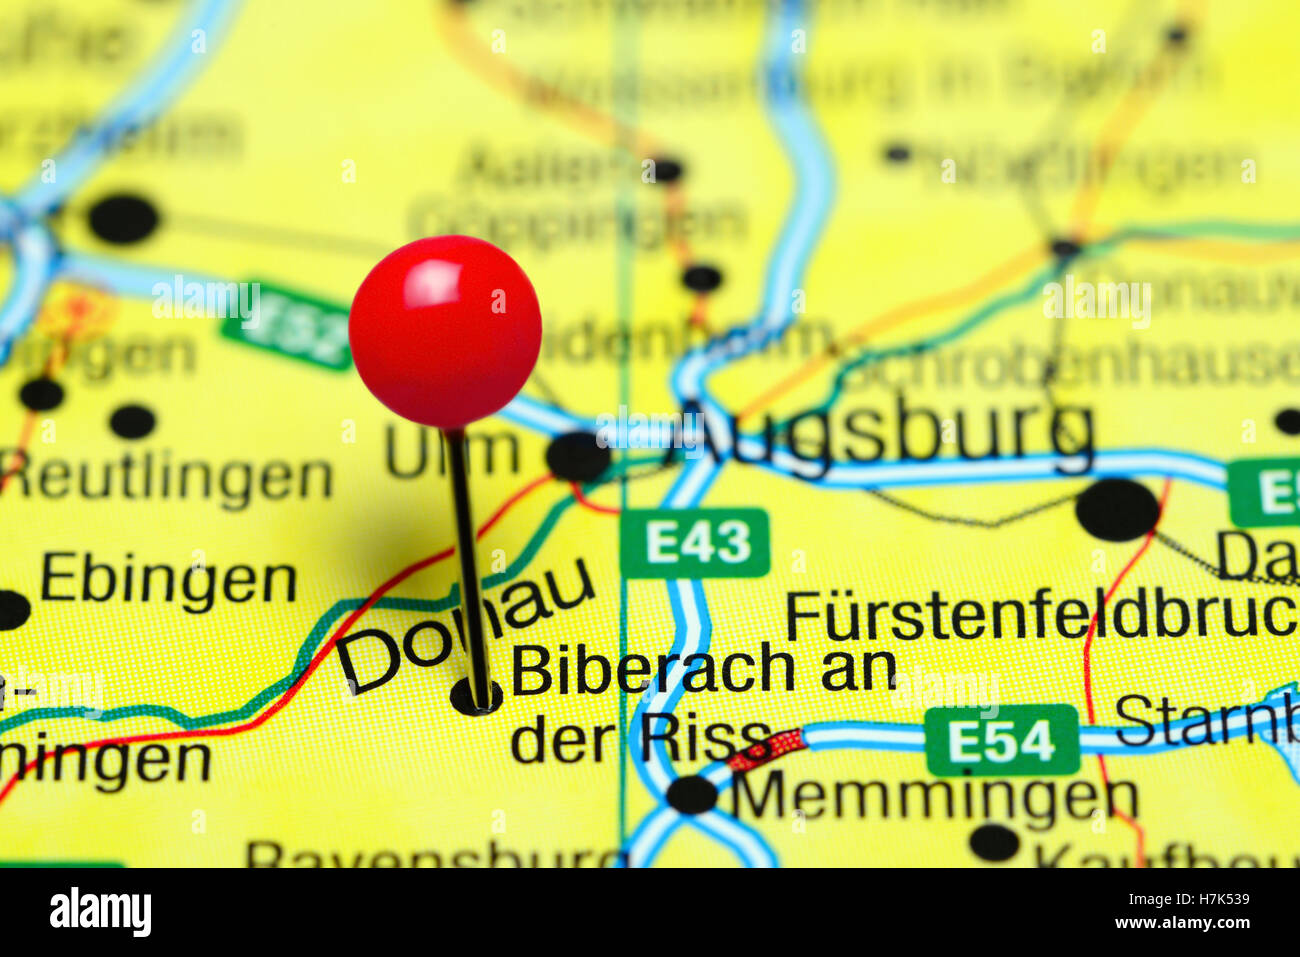 Eine der Riss Biberach merken auf einer Karte von Deutschland